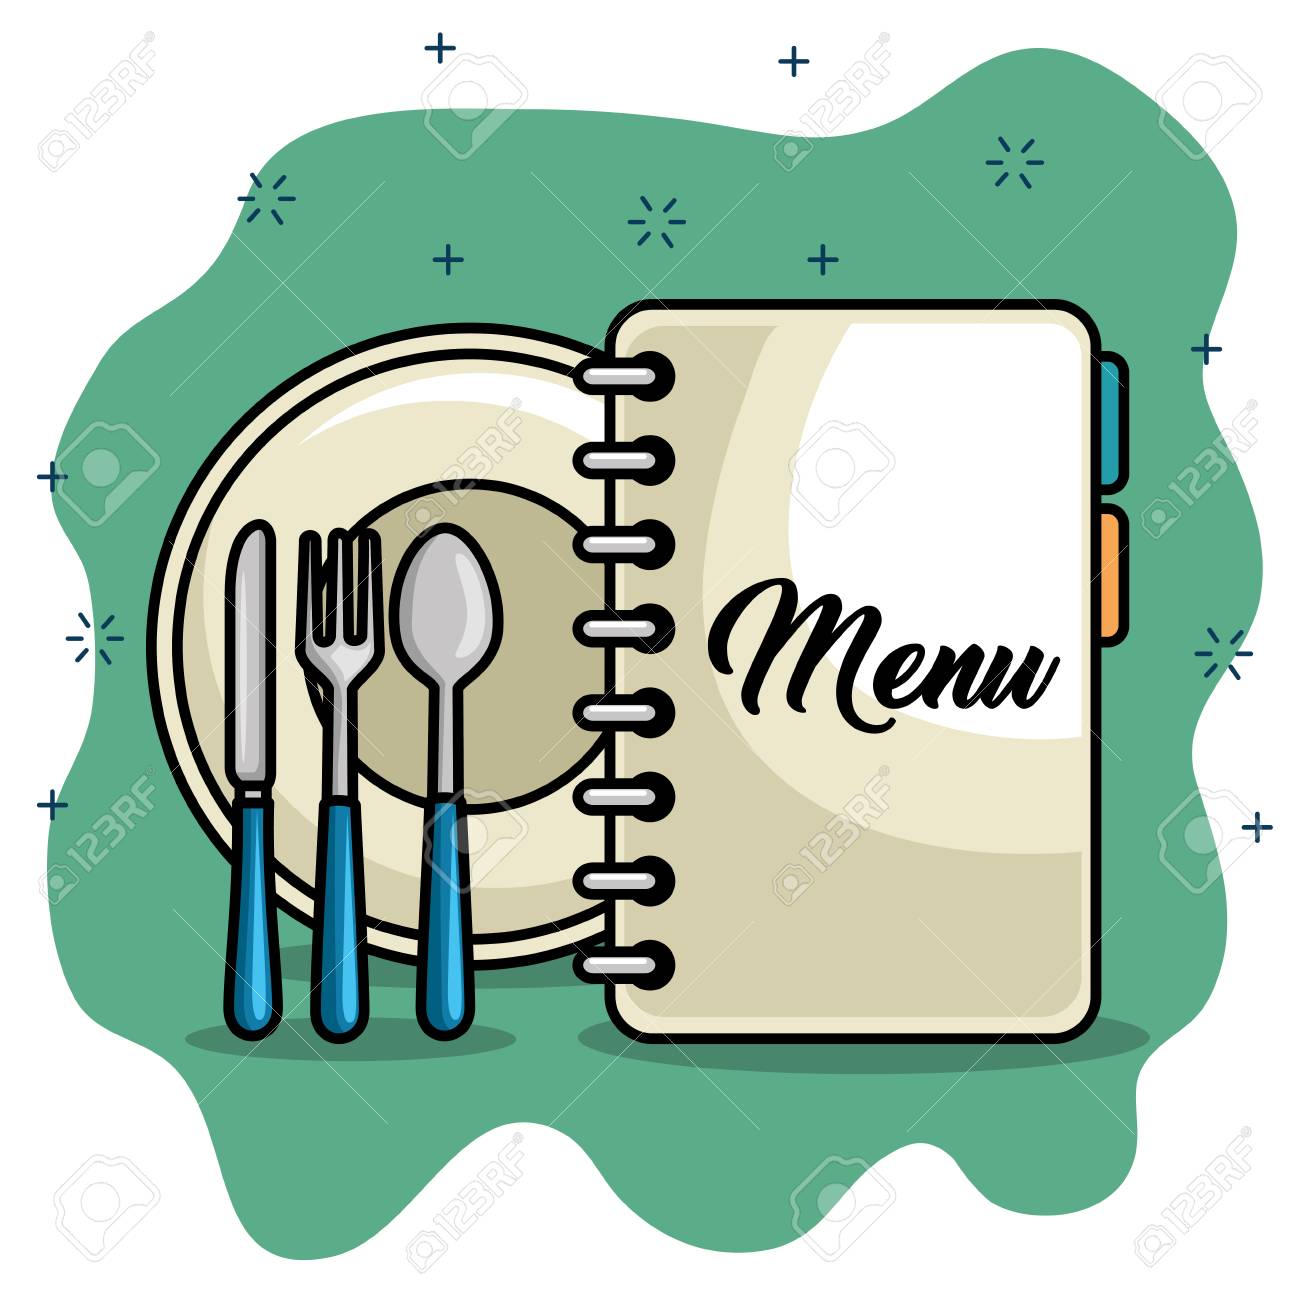 Logo restaurant.jpg